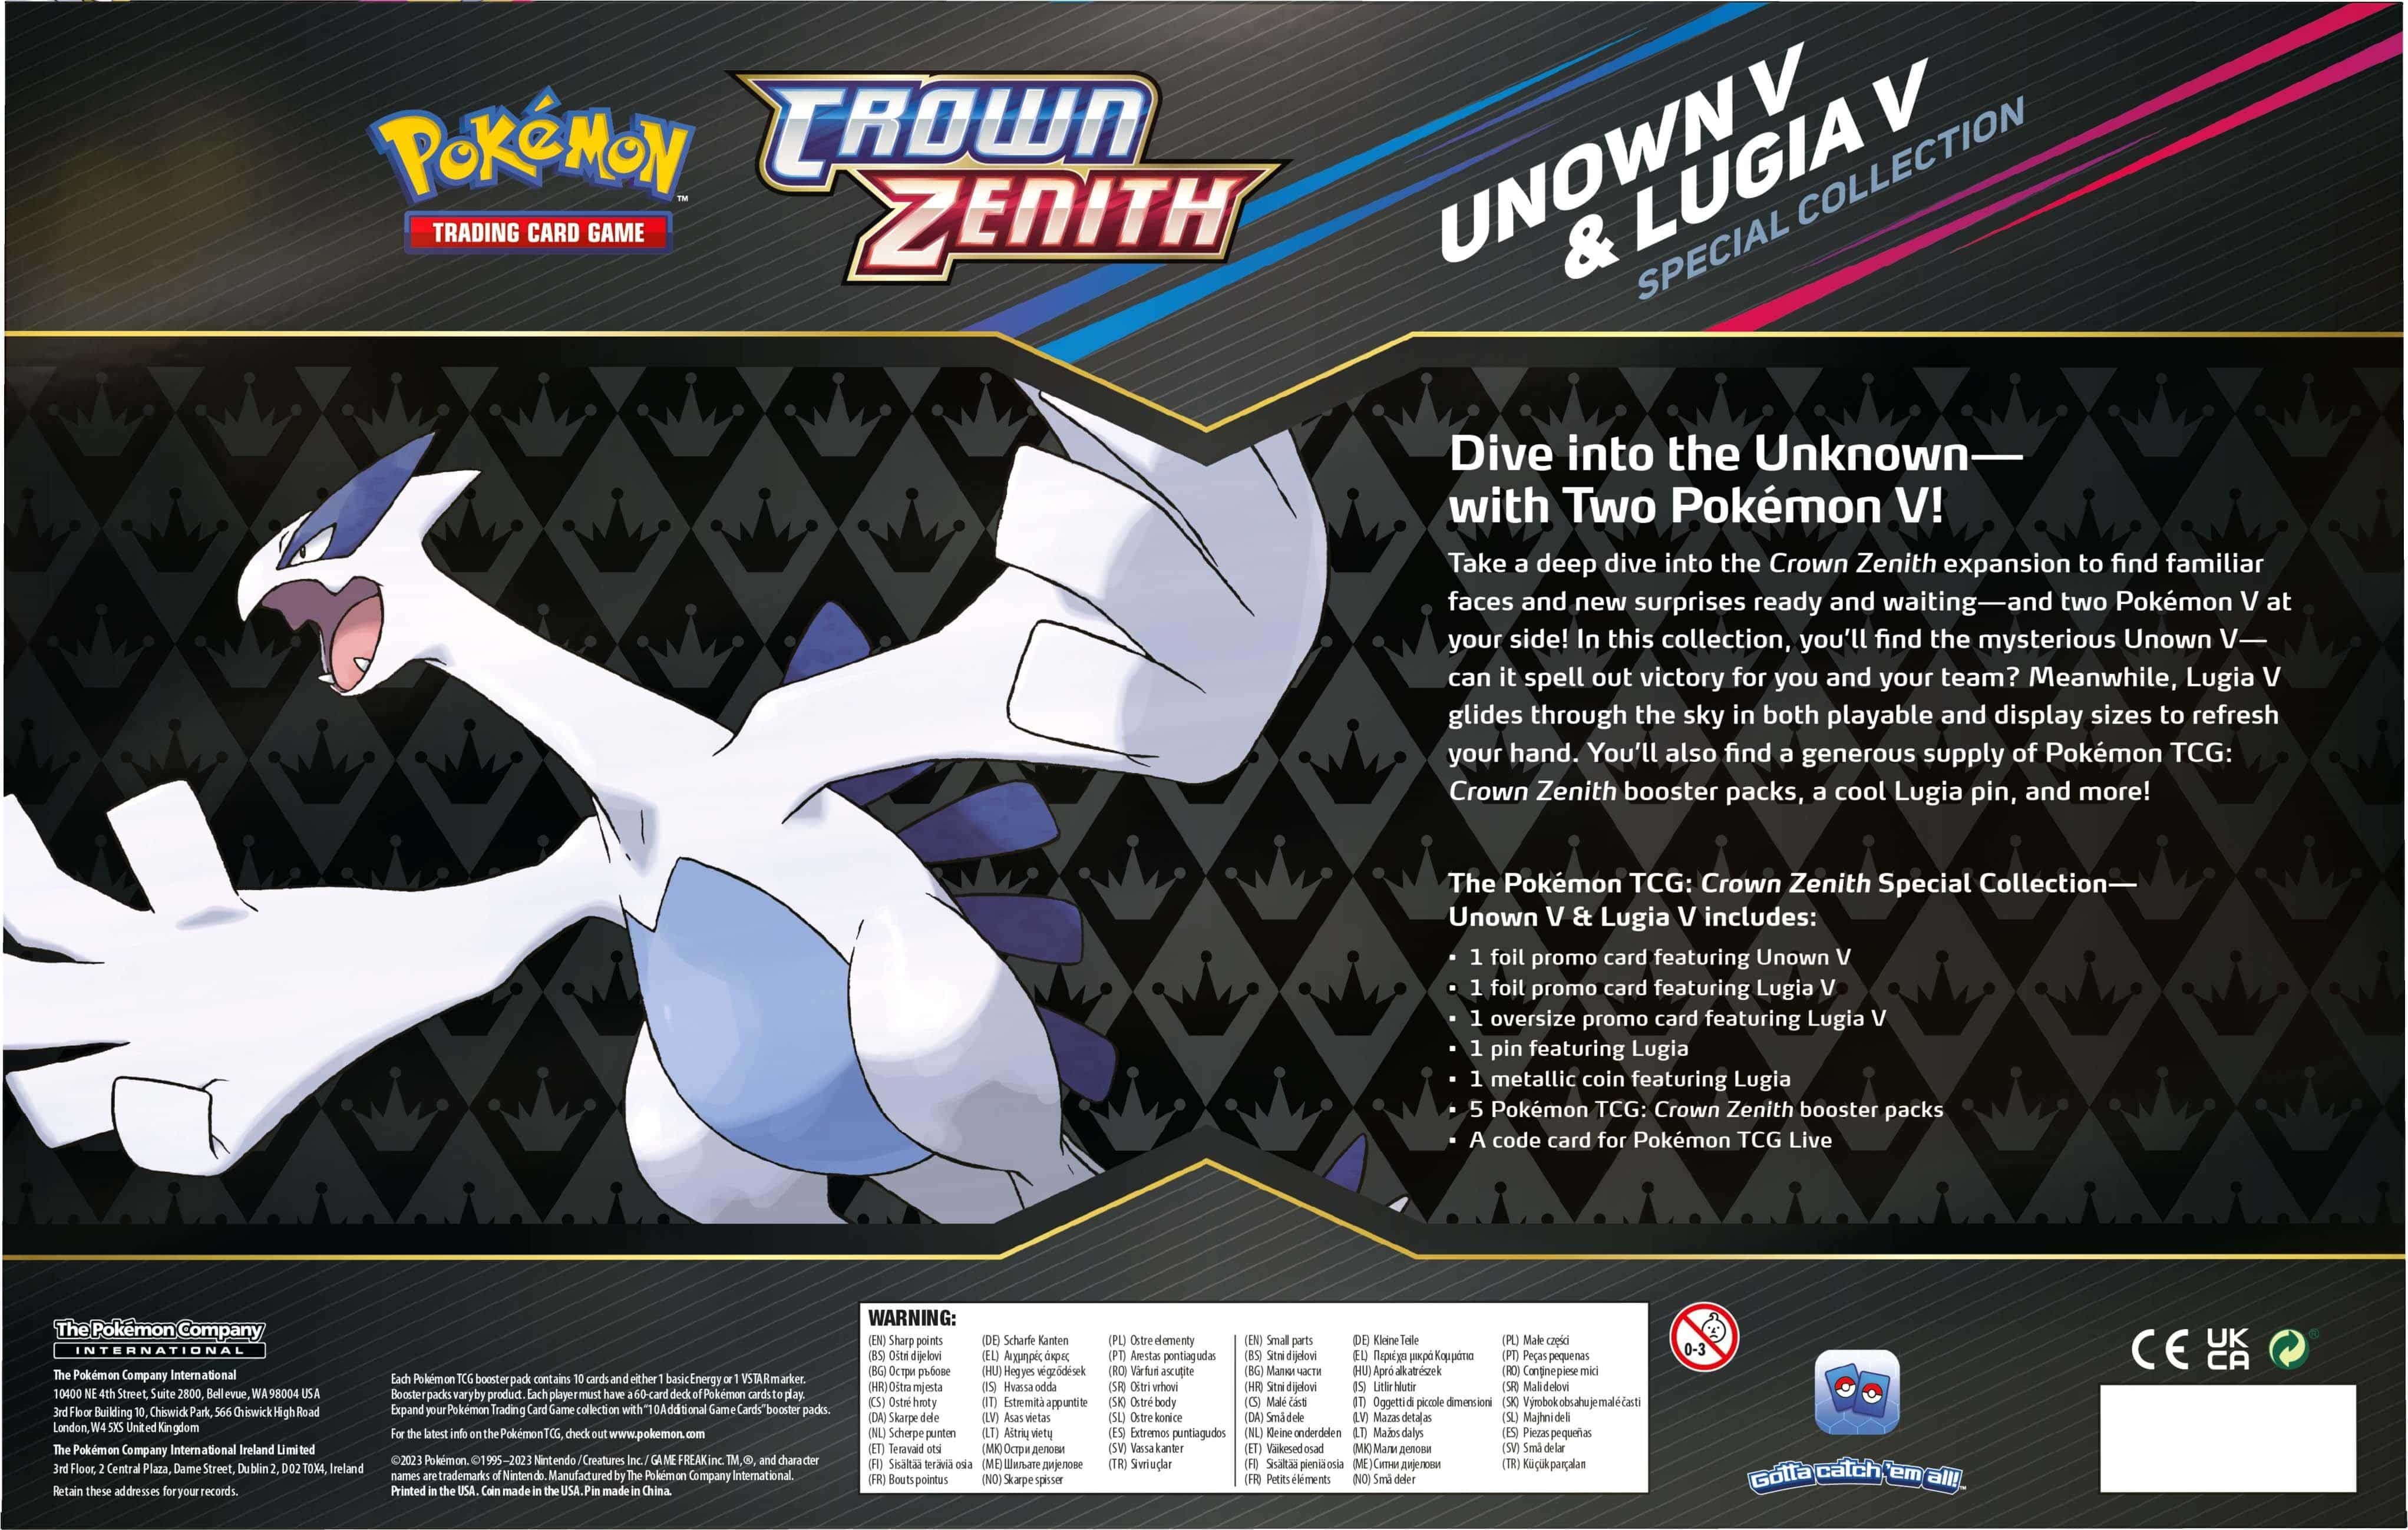 Pokémon Crown Zenith Special Collection Unown V & Lugia V - EN